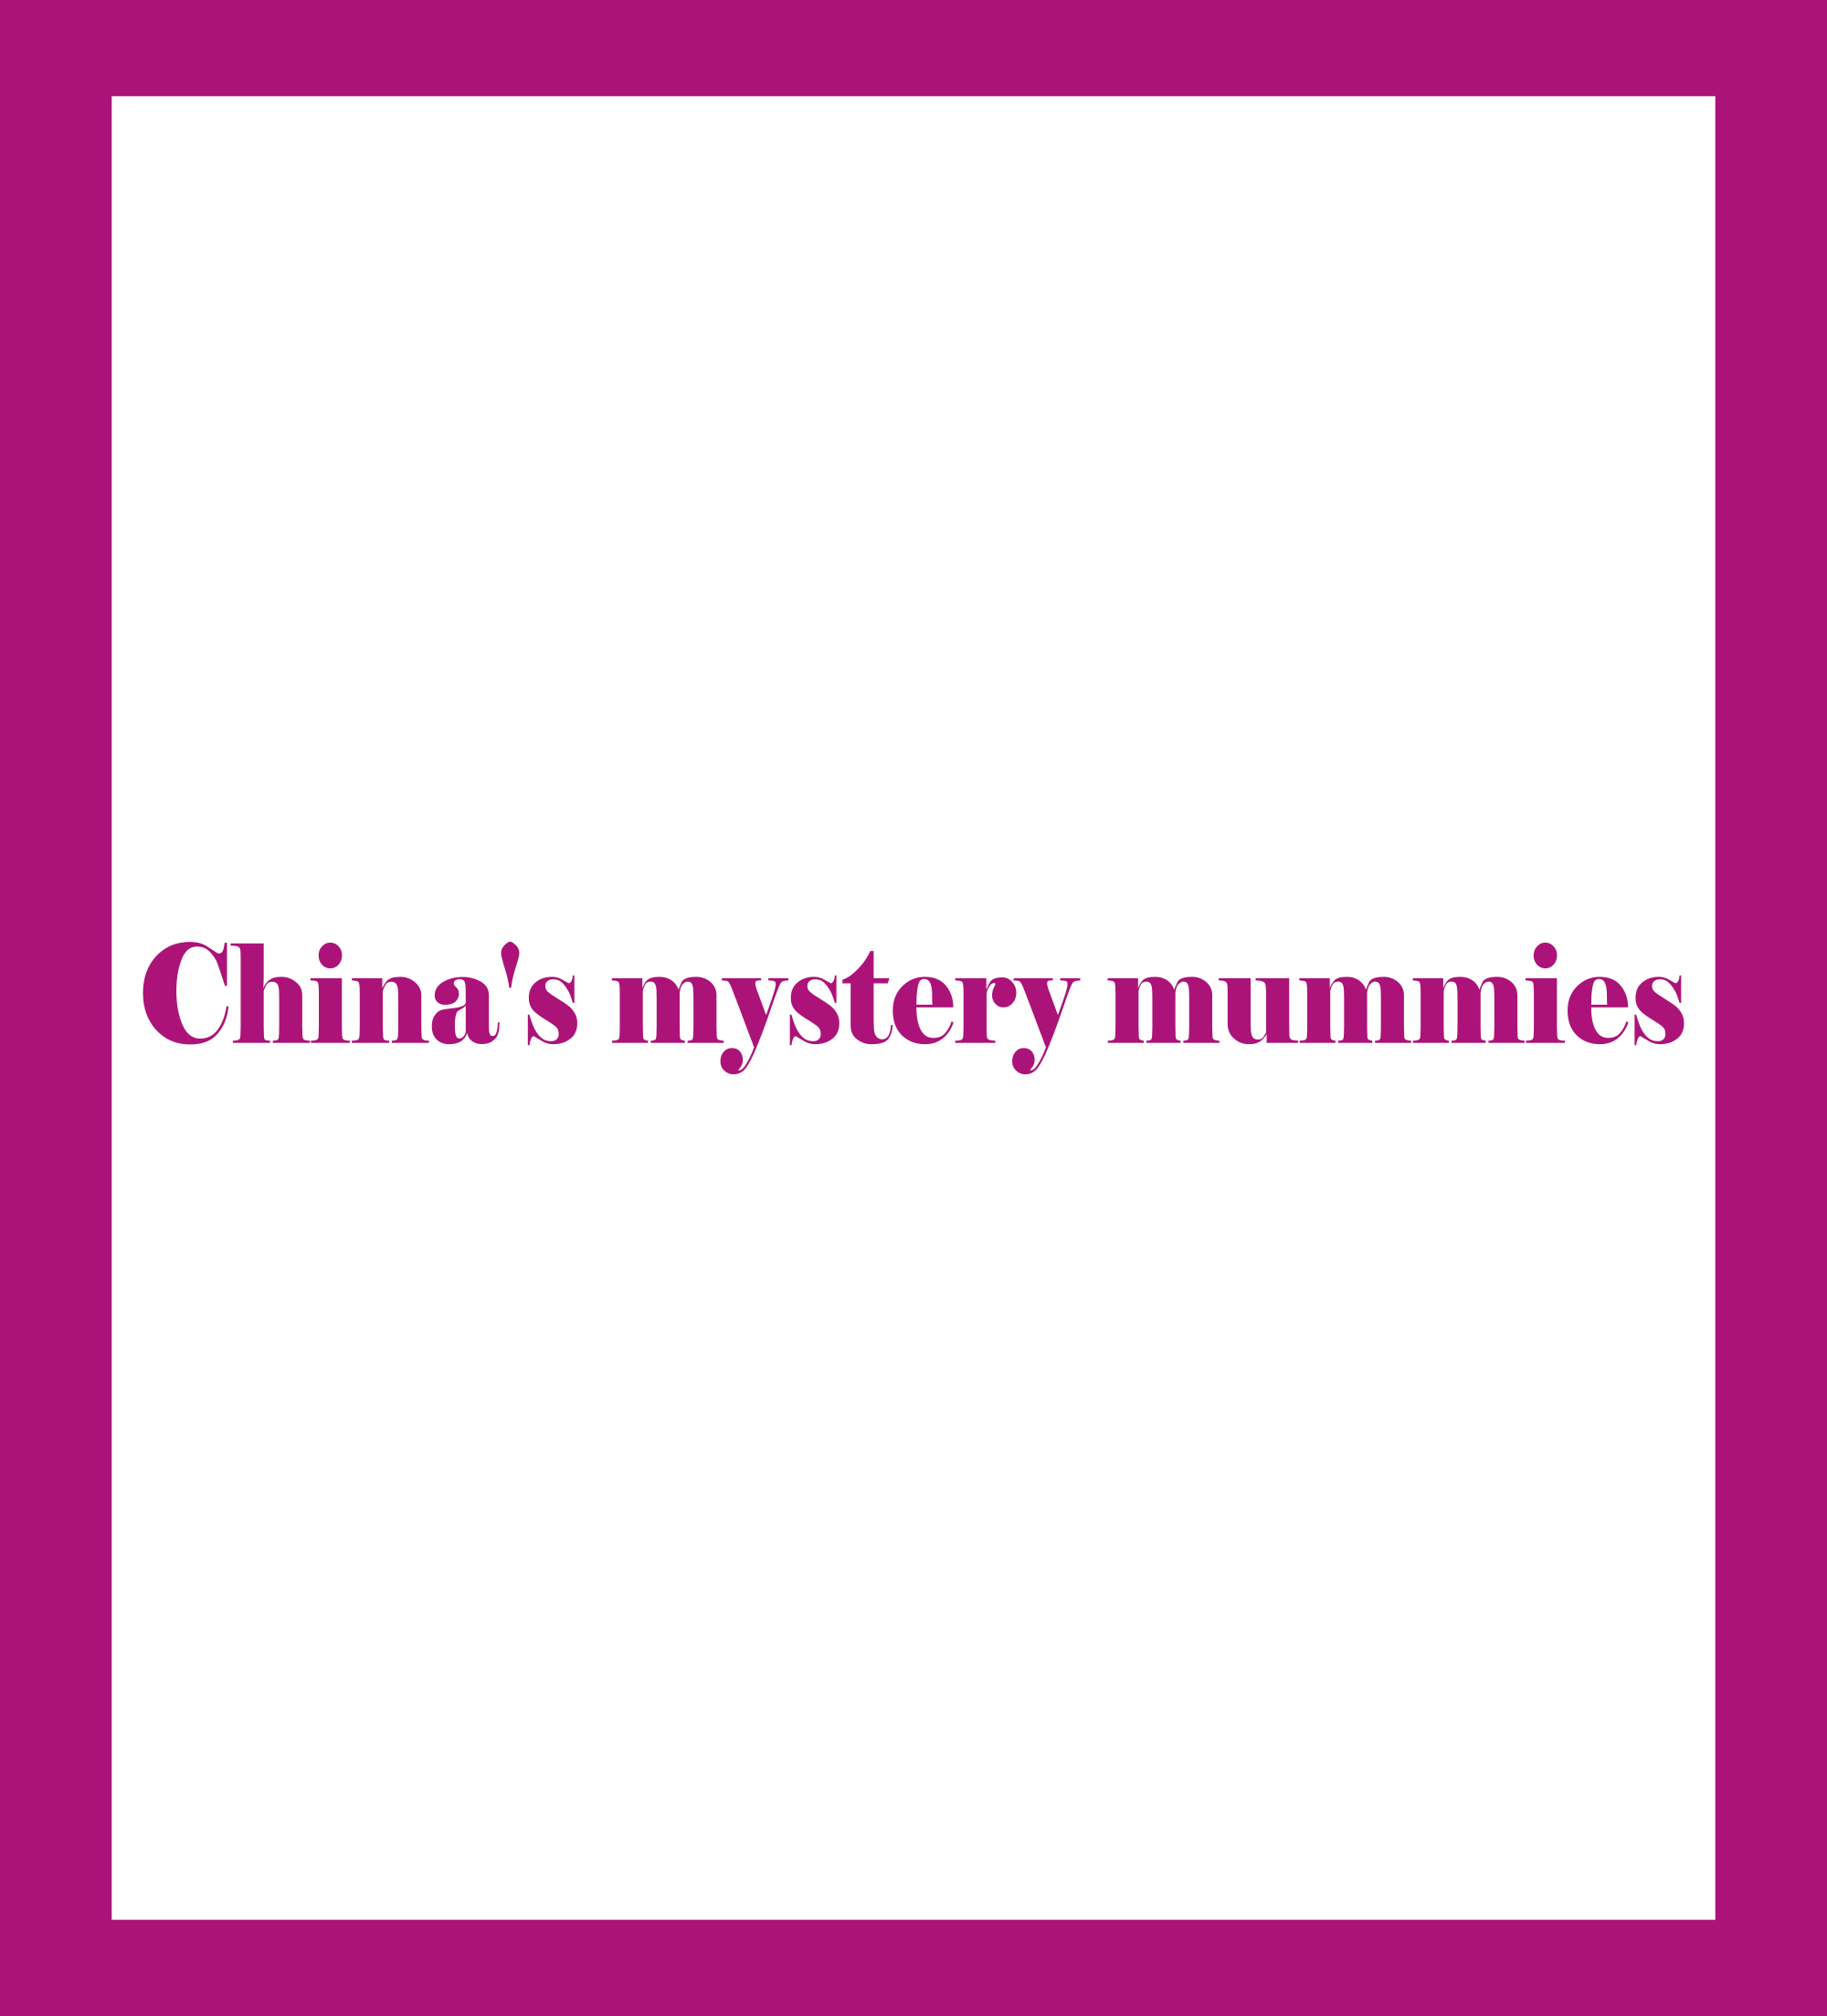 Las misteriosas momias chinas